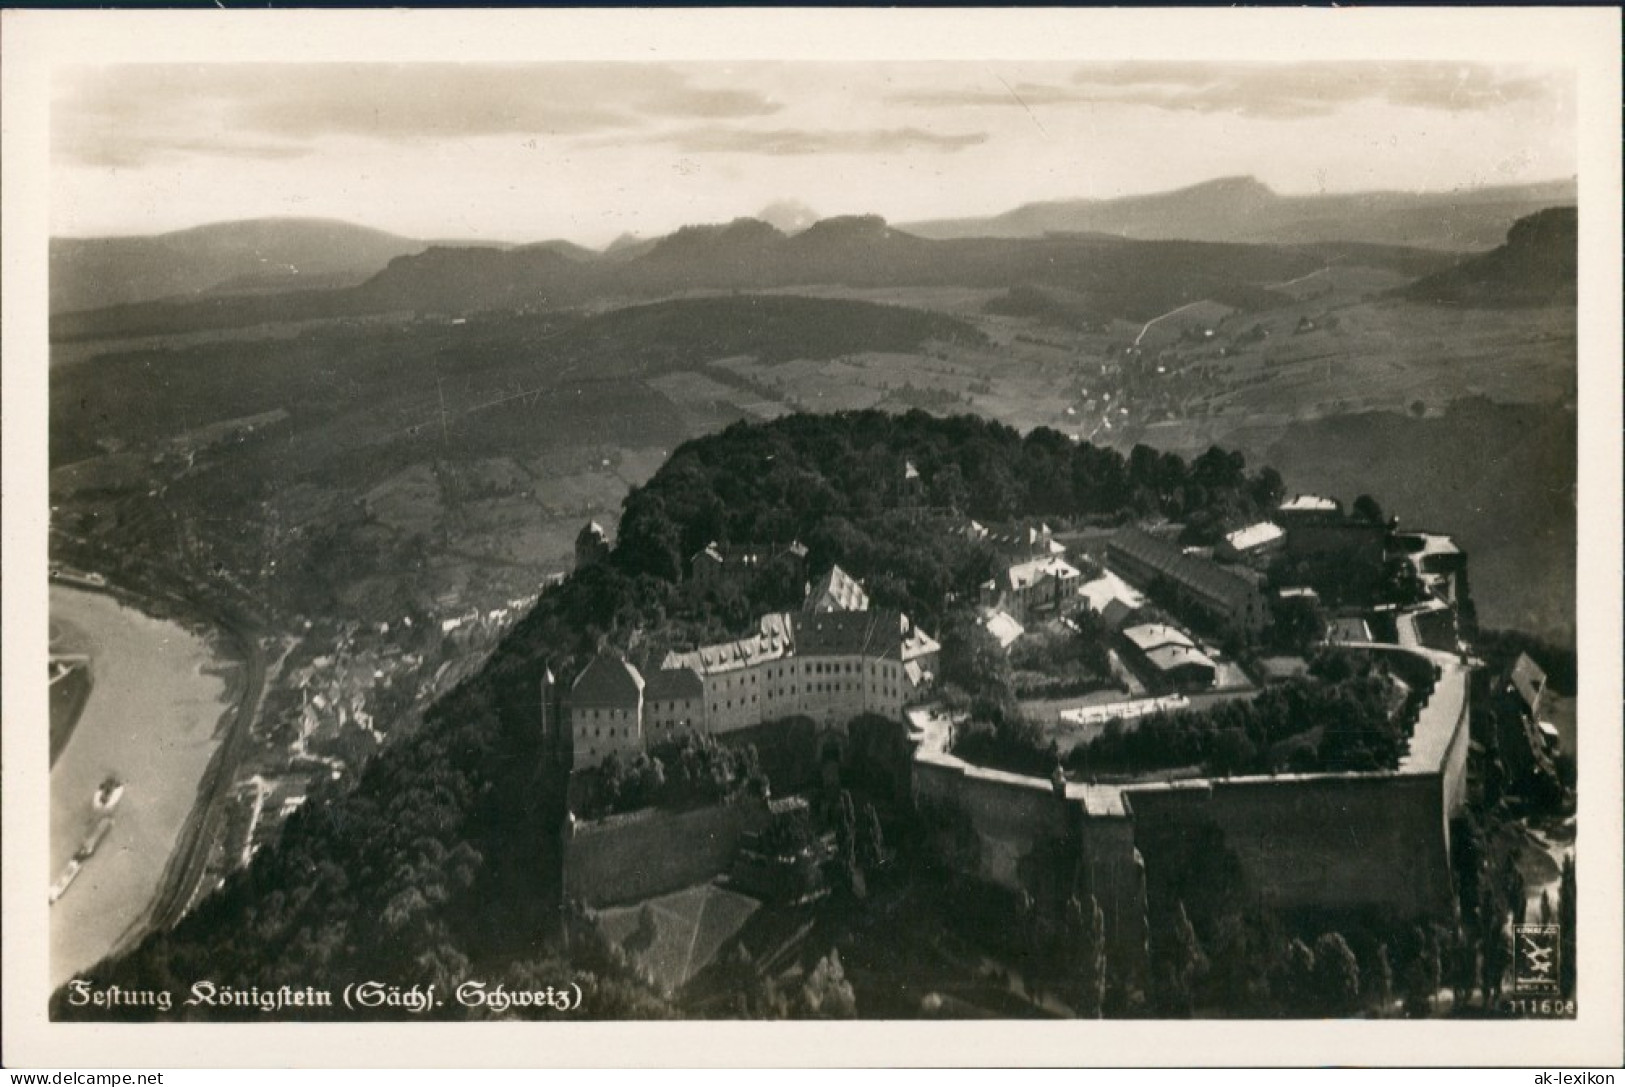 Ansichtskarte Königstein (Sächsische Schweiz) Luftbild Stadt Festung 1938 - Koenigstein (Saechs. Schw.)